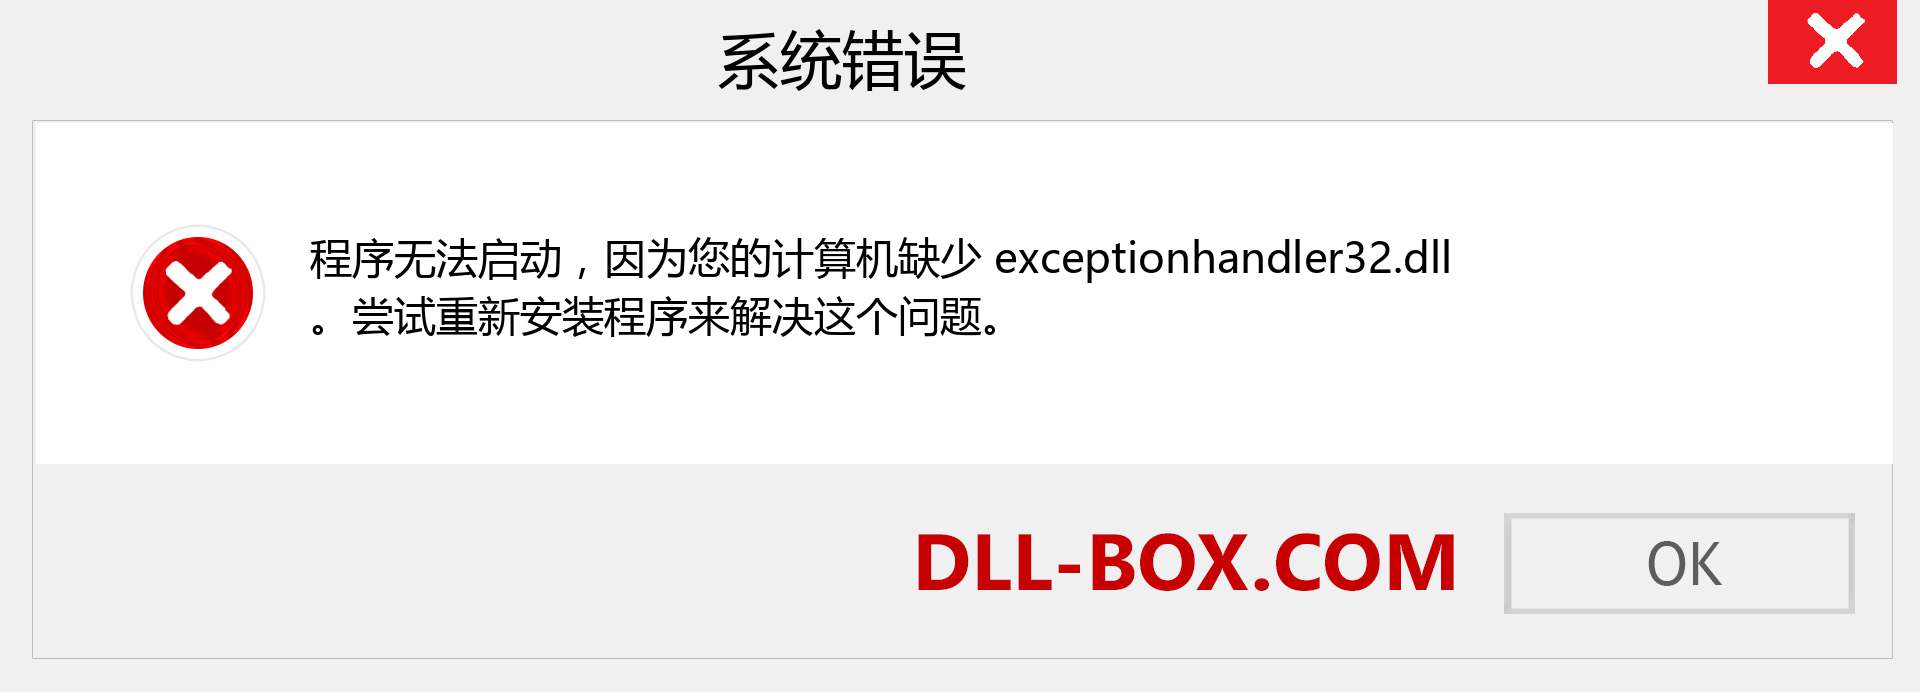 exceptionhandler32.dll 文件丢失？。 适用于 Windows 7、8、10 的下载 - 修复 Windows、照片、图像上的 exceptionhandler32 dll 丢失错误